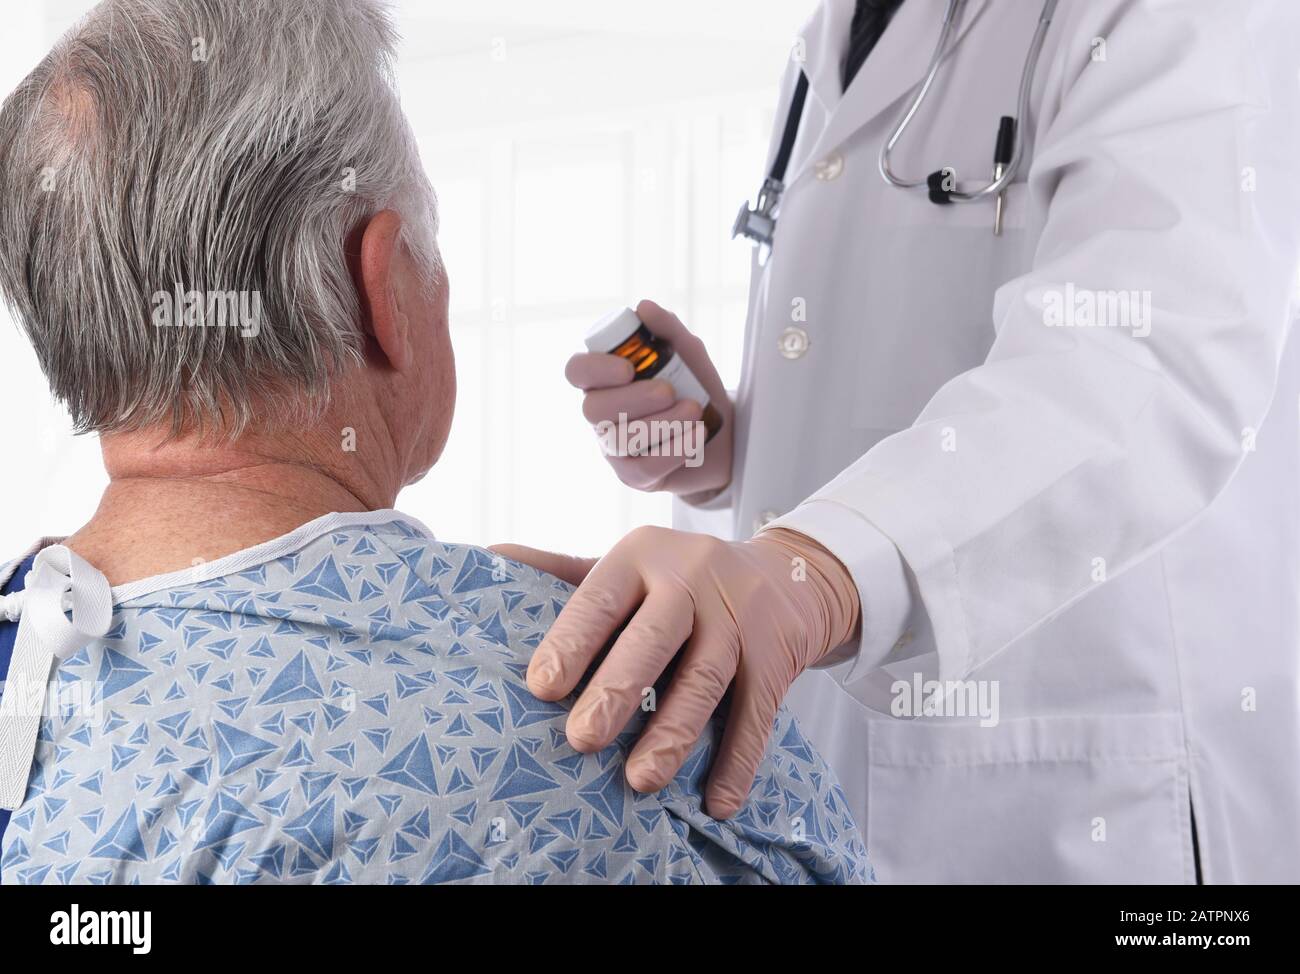 Die Nahaufnahme eines älteren männlichen Patienten, der als Arzt einen Krankenhauskeimen trägt, legt seine Hand auf die Schulter und bietet Komfort. Stockfoto